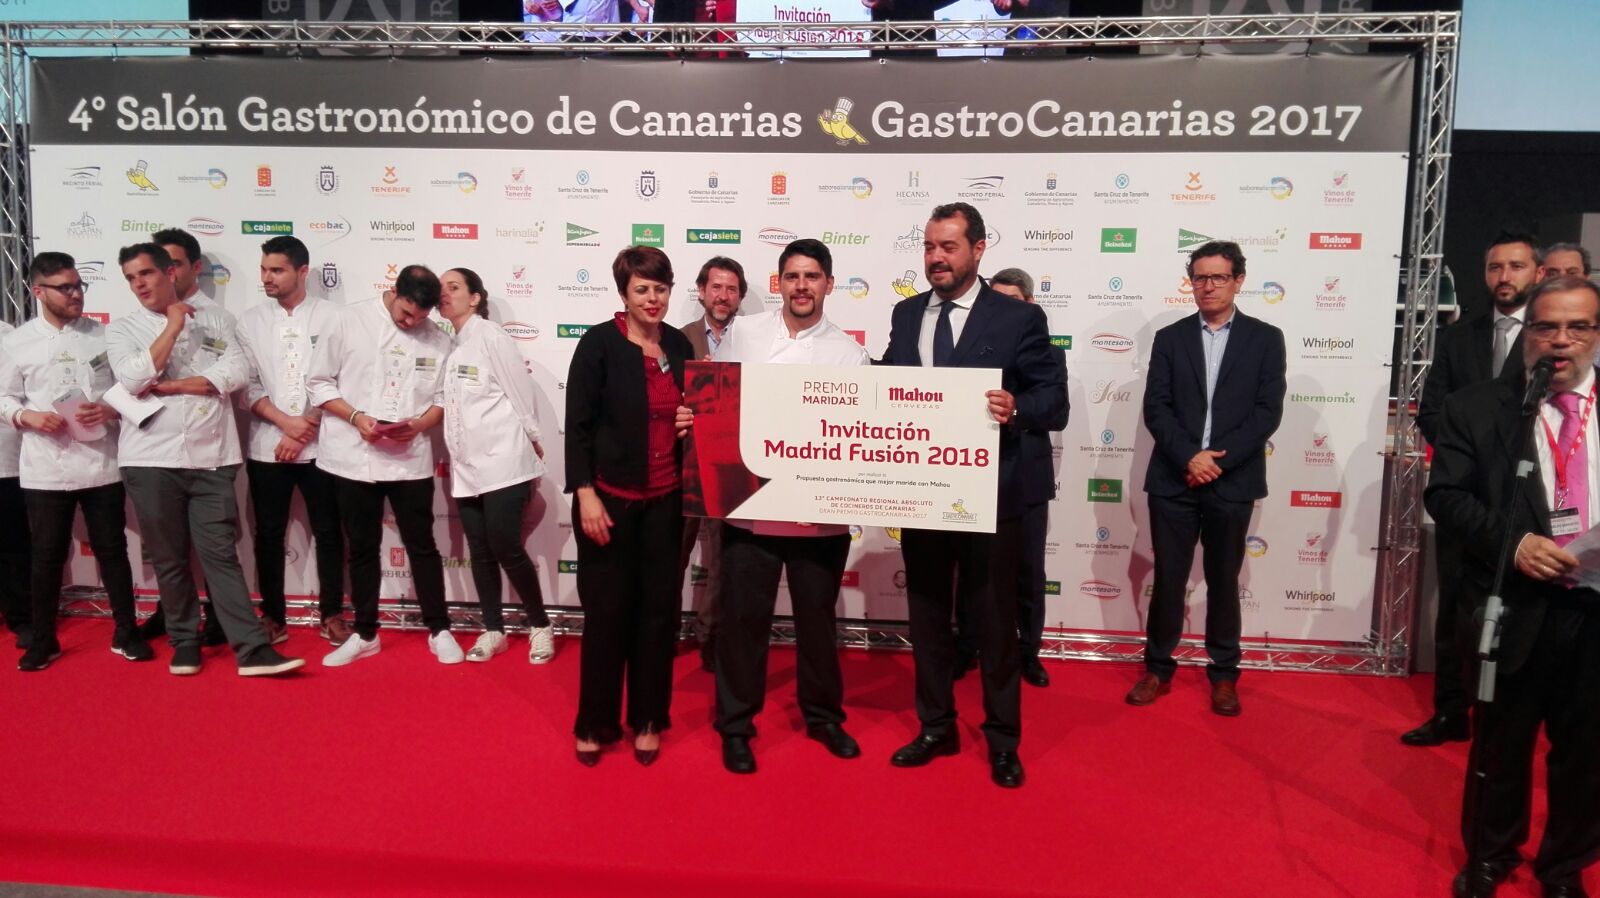 El Cabildo de Gran Canaria vuelve de Gastrocanarias con cuatro premios para sus chefs consagrados y jóvenes